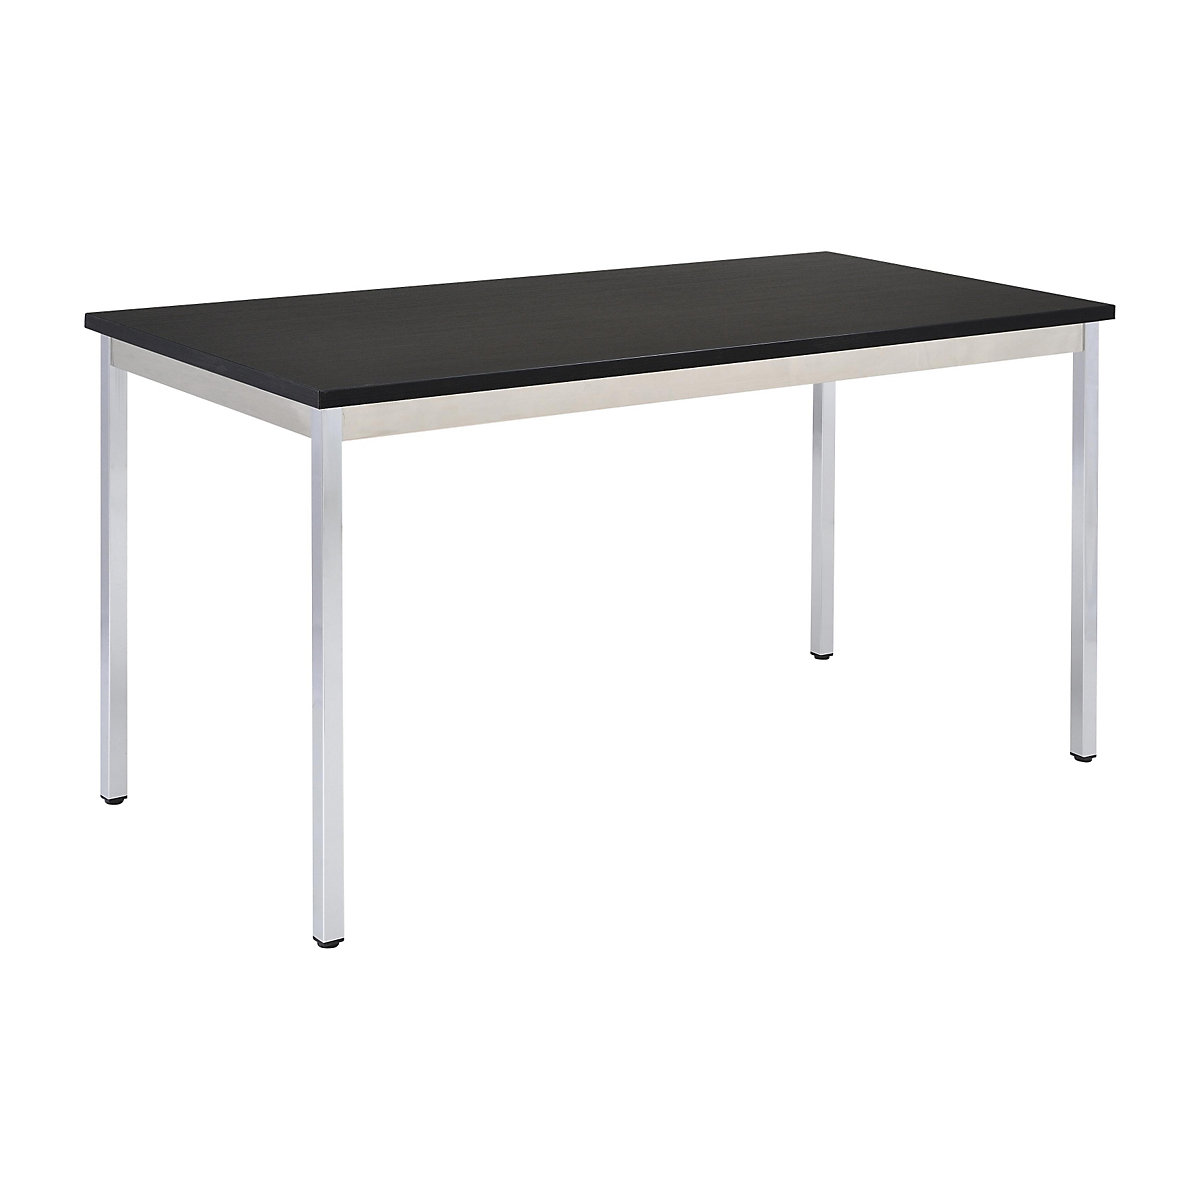 Víceúčelový stůl – eurokraft basic, obdélníkový tvar, v x š x h 740 x 1600 x 800 mm, deska černá, podstavec pochromovaný-13